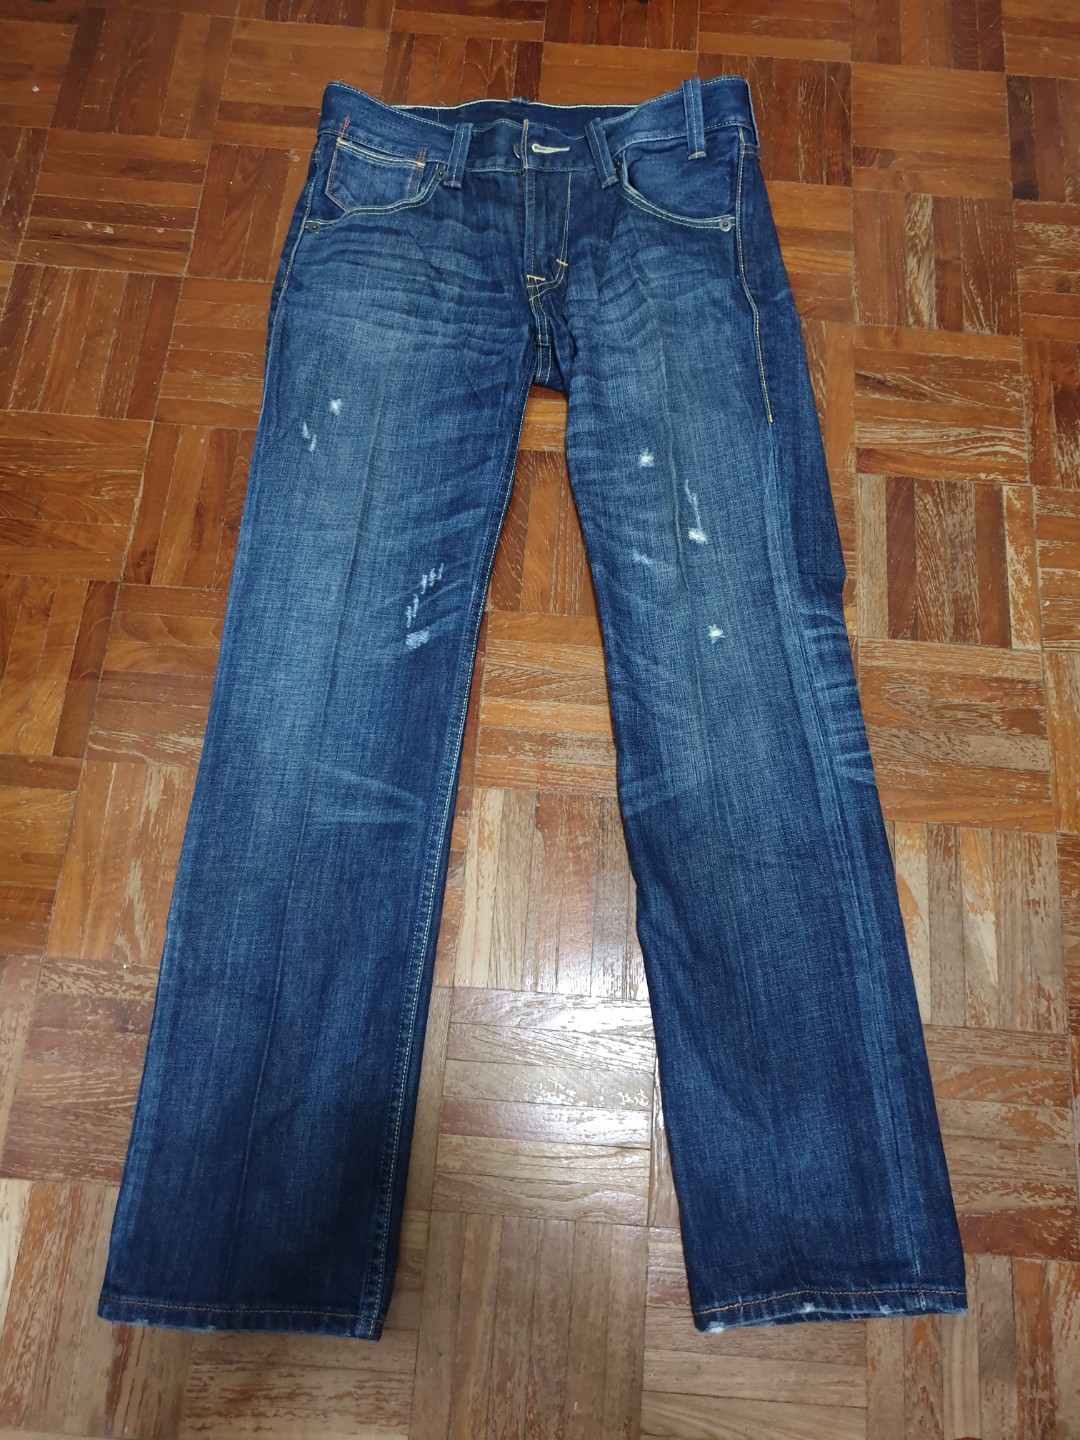 levis 504 jeans